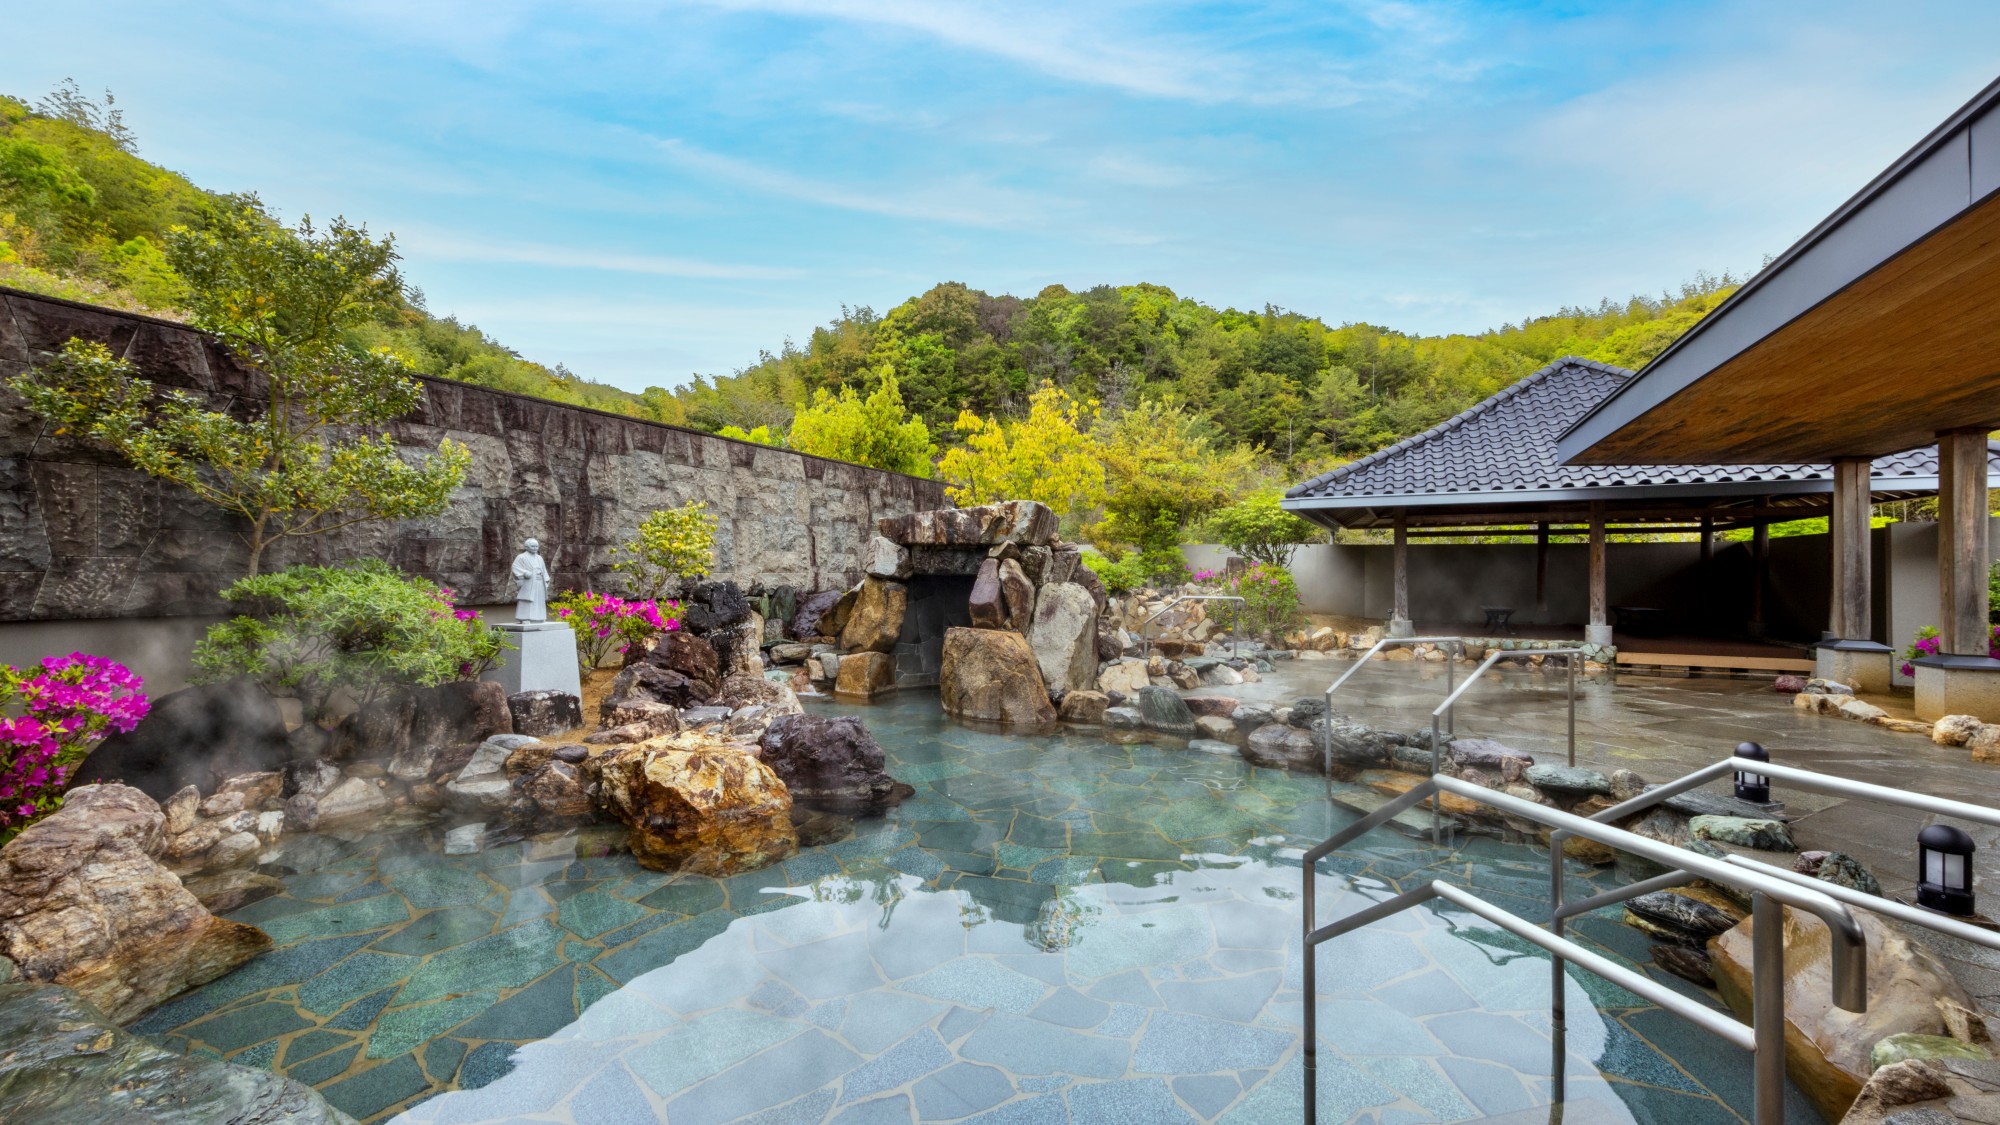 ホテルには2つのタイプの露天風呂「桂浜」と「室戸岬」があります。（写真は桂浜）